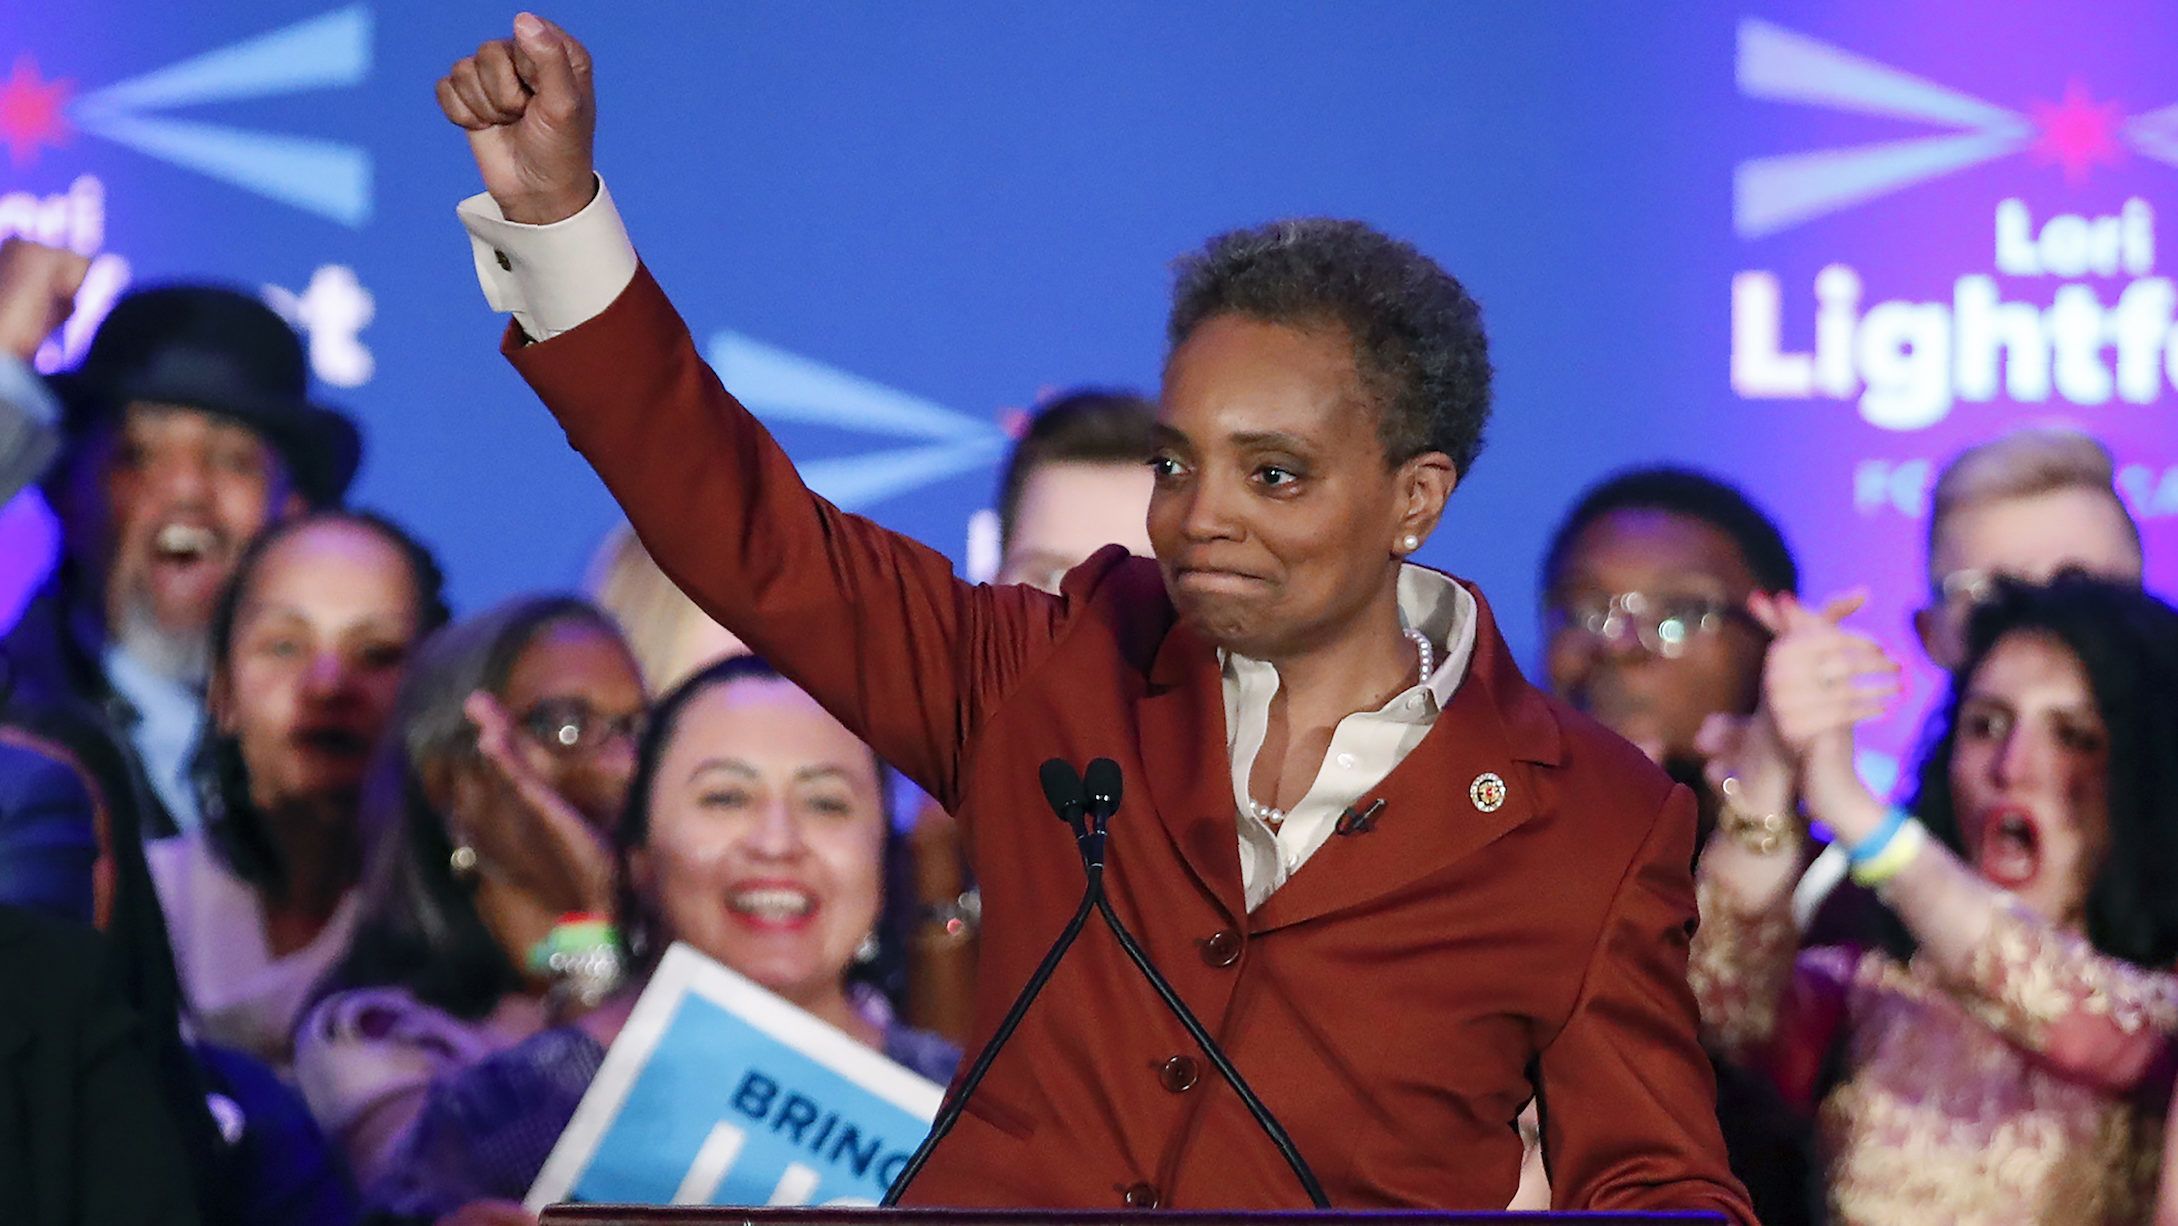 Chicago történetében először fekete nőt választottak polgármesternek